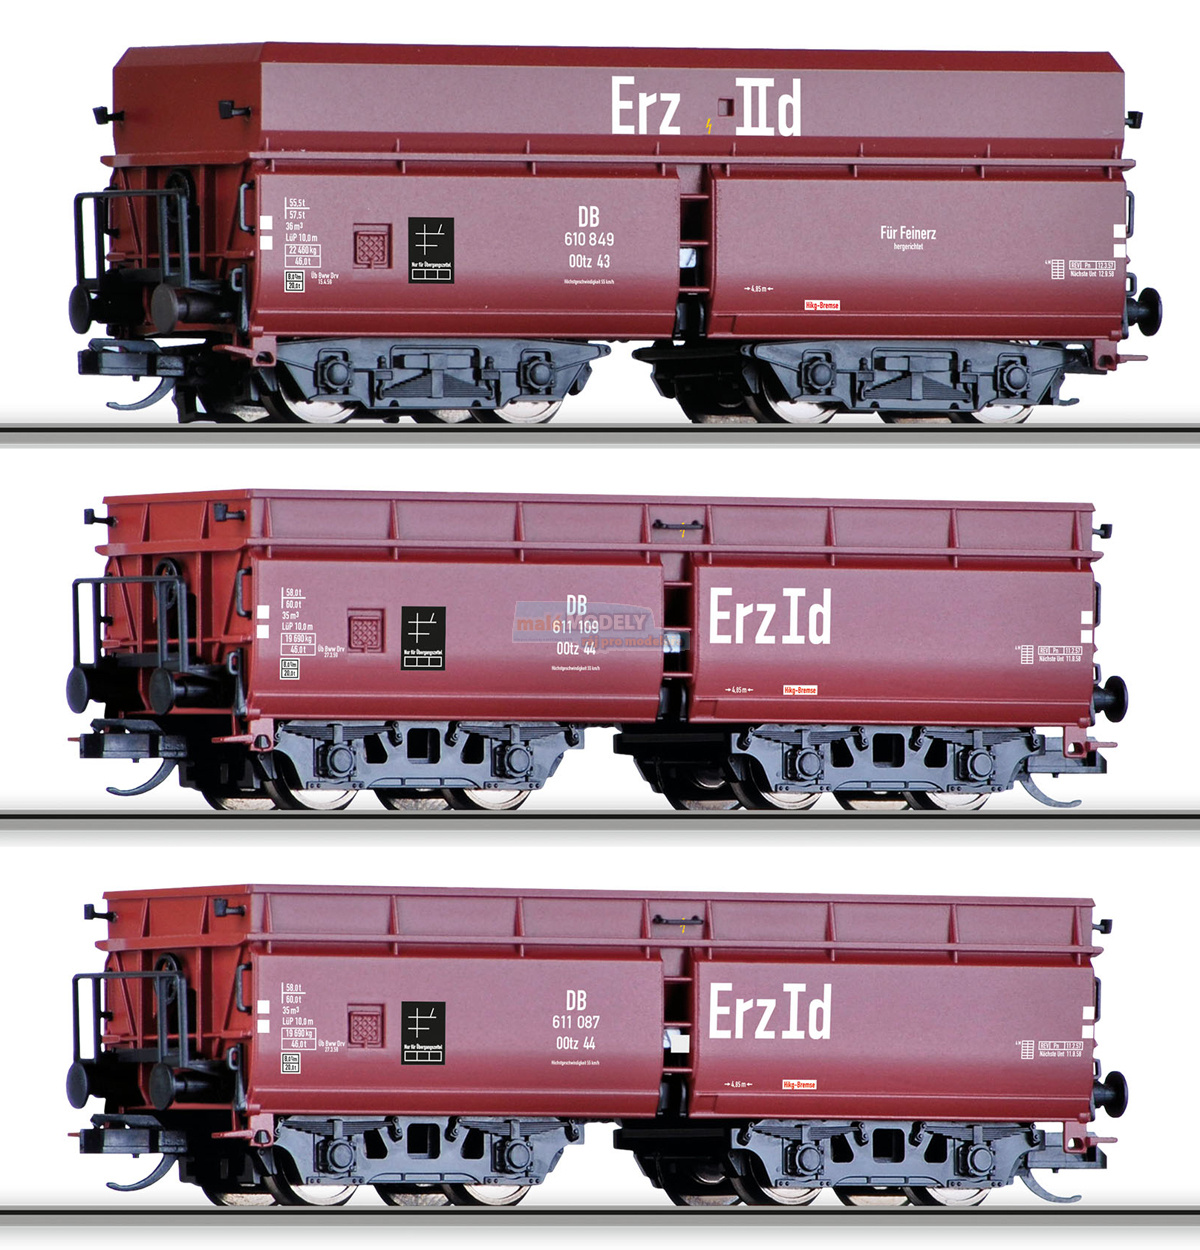 Set 3 samovýsypných vozů <b>Erzzug 2</b> - OOtz43 a OOtz44, nová forma